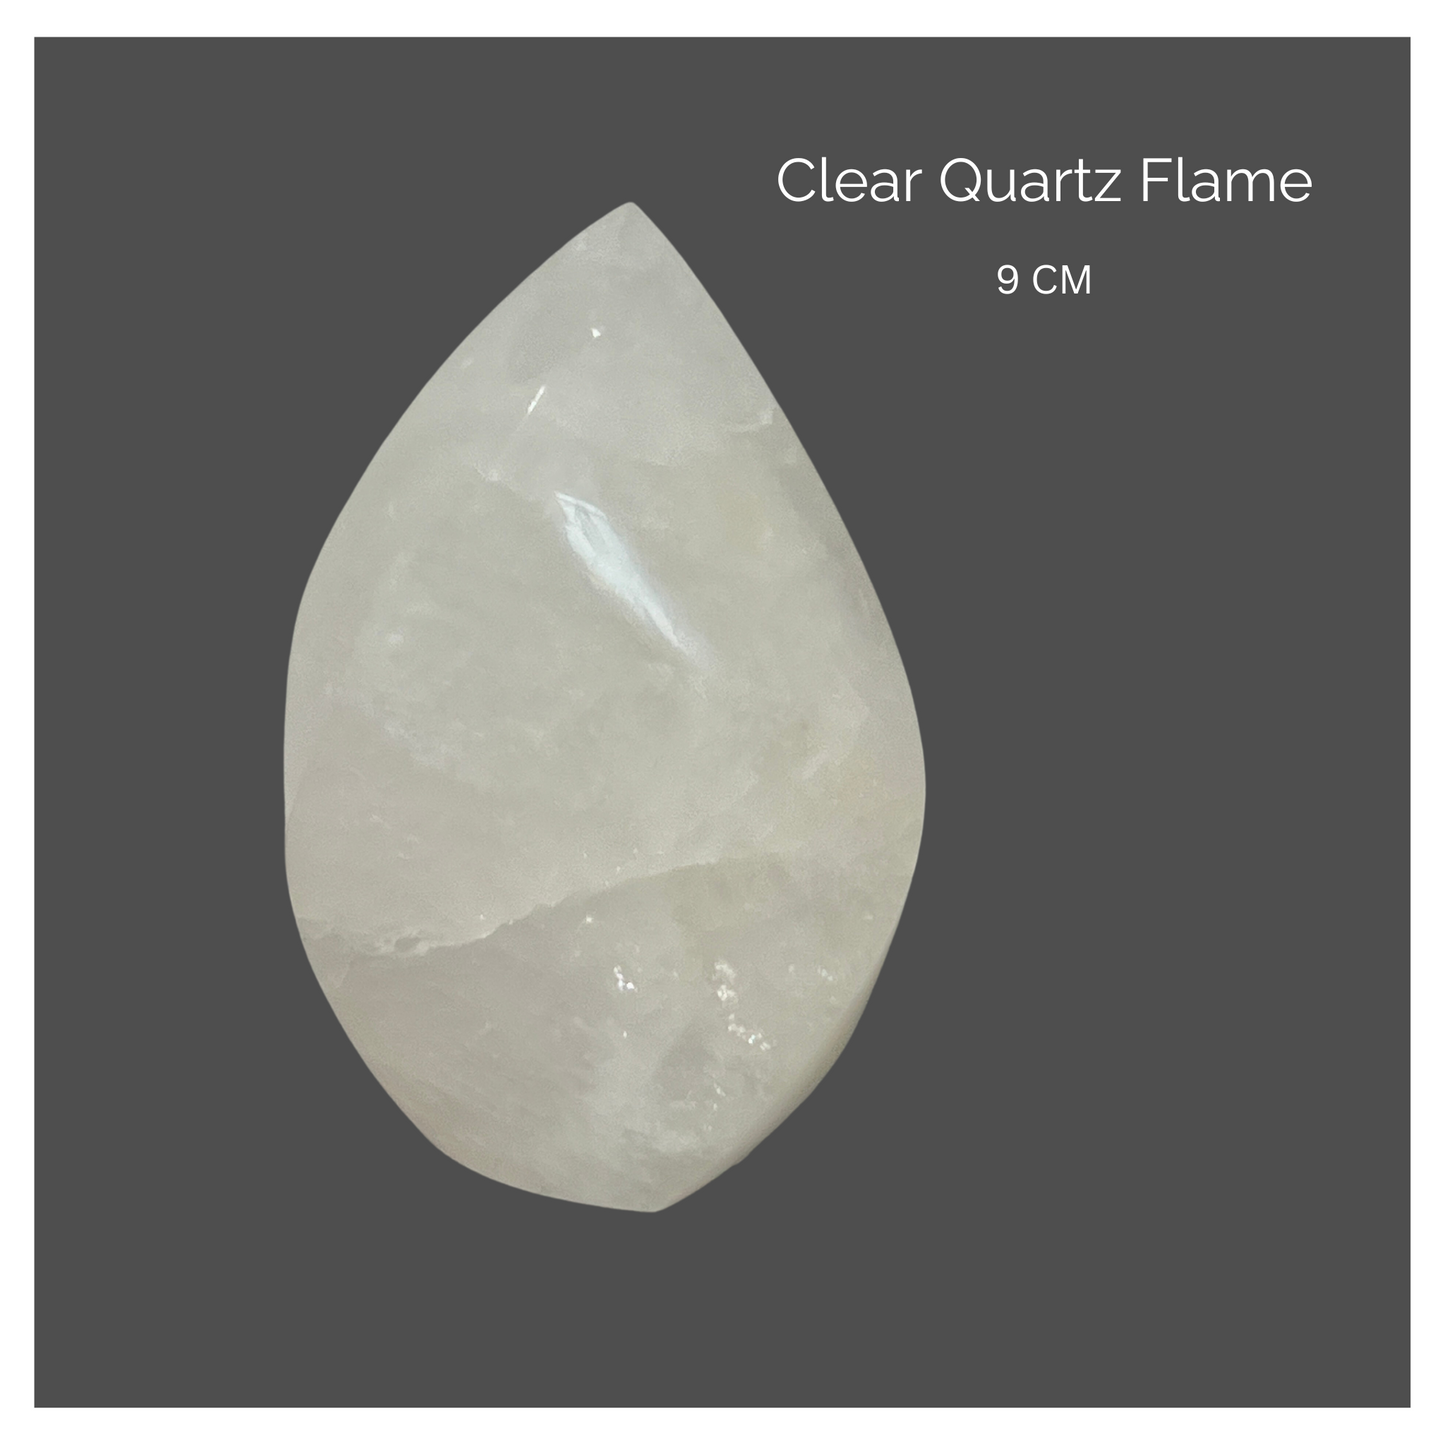 Clear Quartz Flame